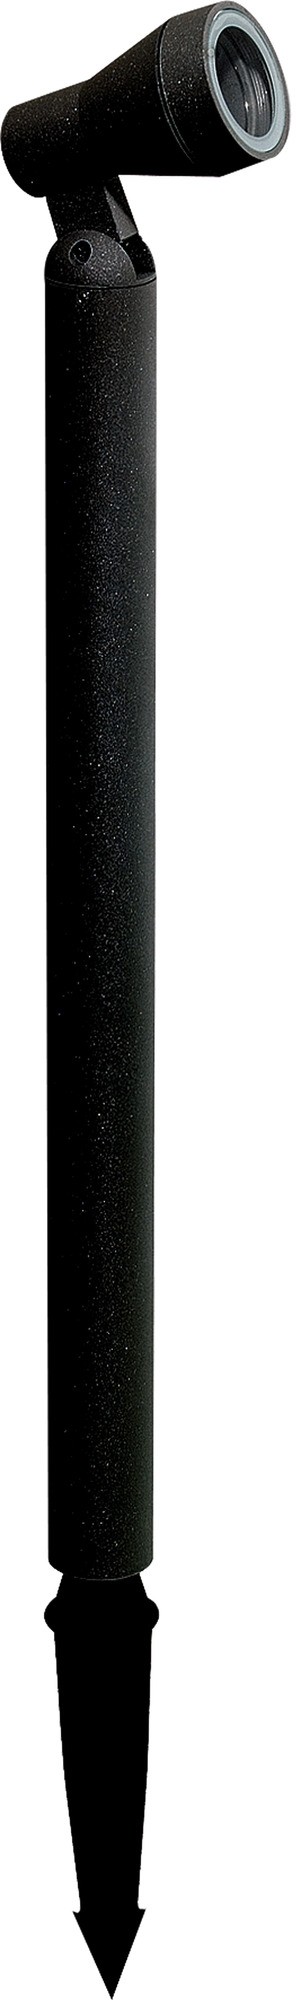 Polo 12V Post Spot Light in Black Oriel Lighting